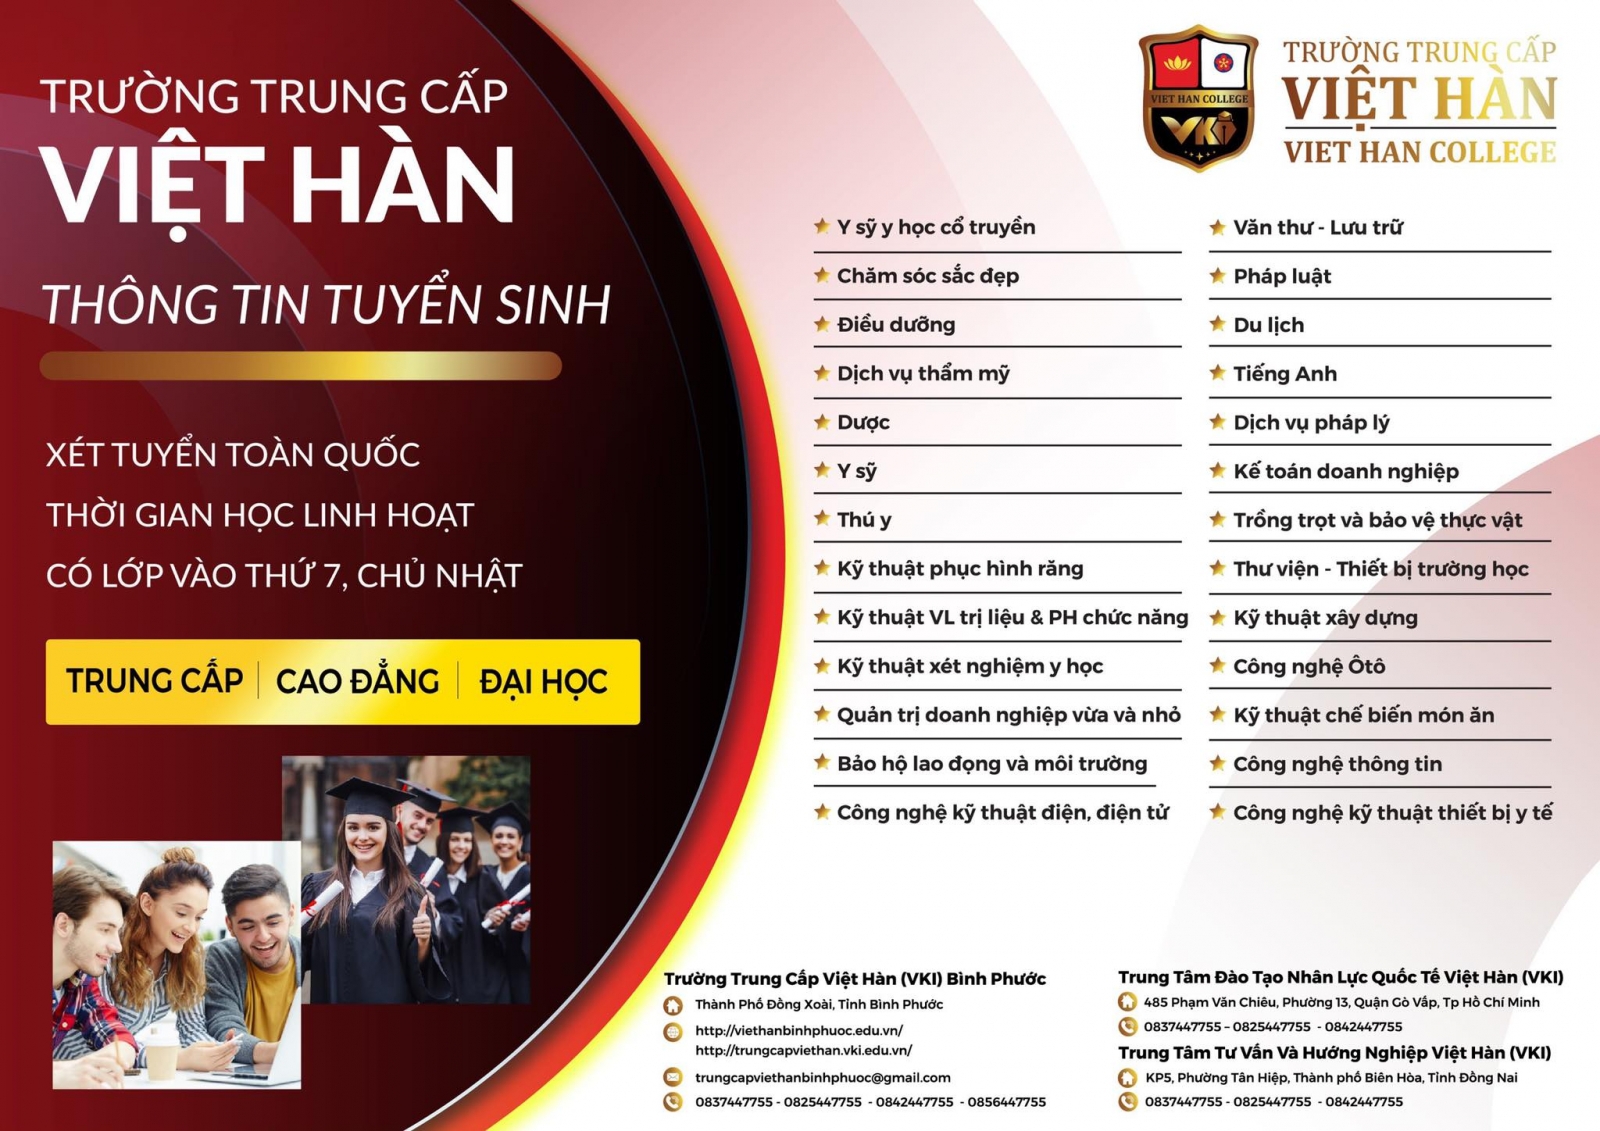 Trường Trung cấp Việt Hàn tuyển sinh ngành Răng- Hàm- Mặt - Ảnh minh hoạ 3